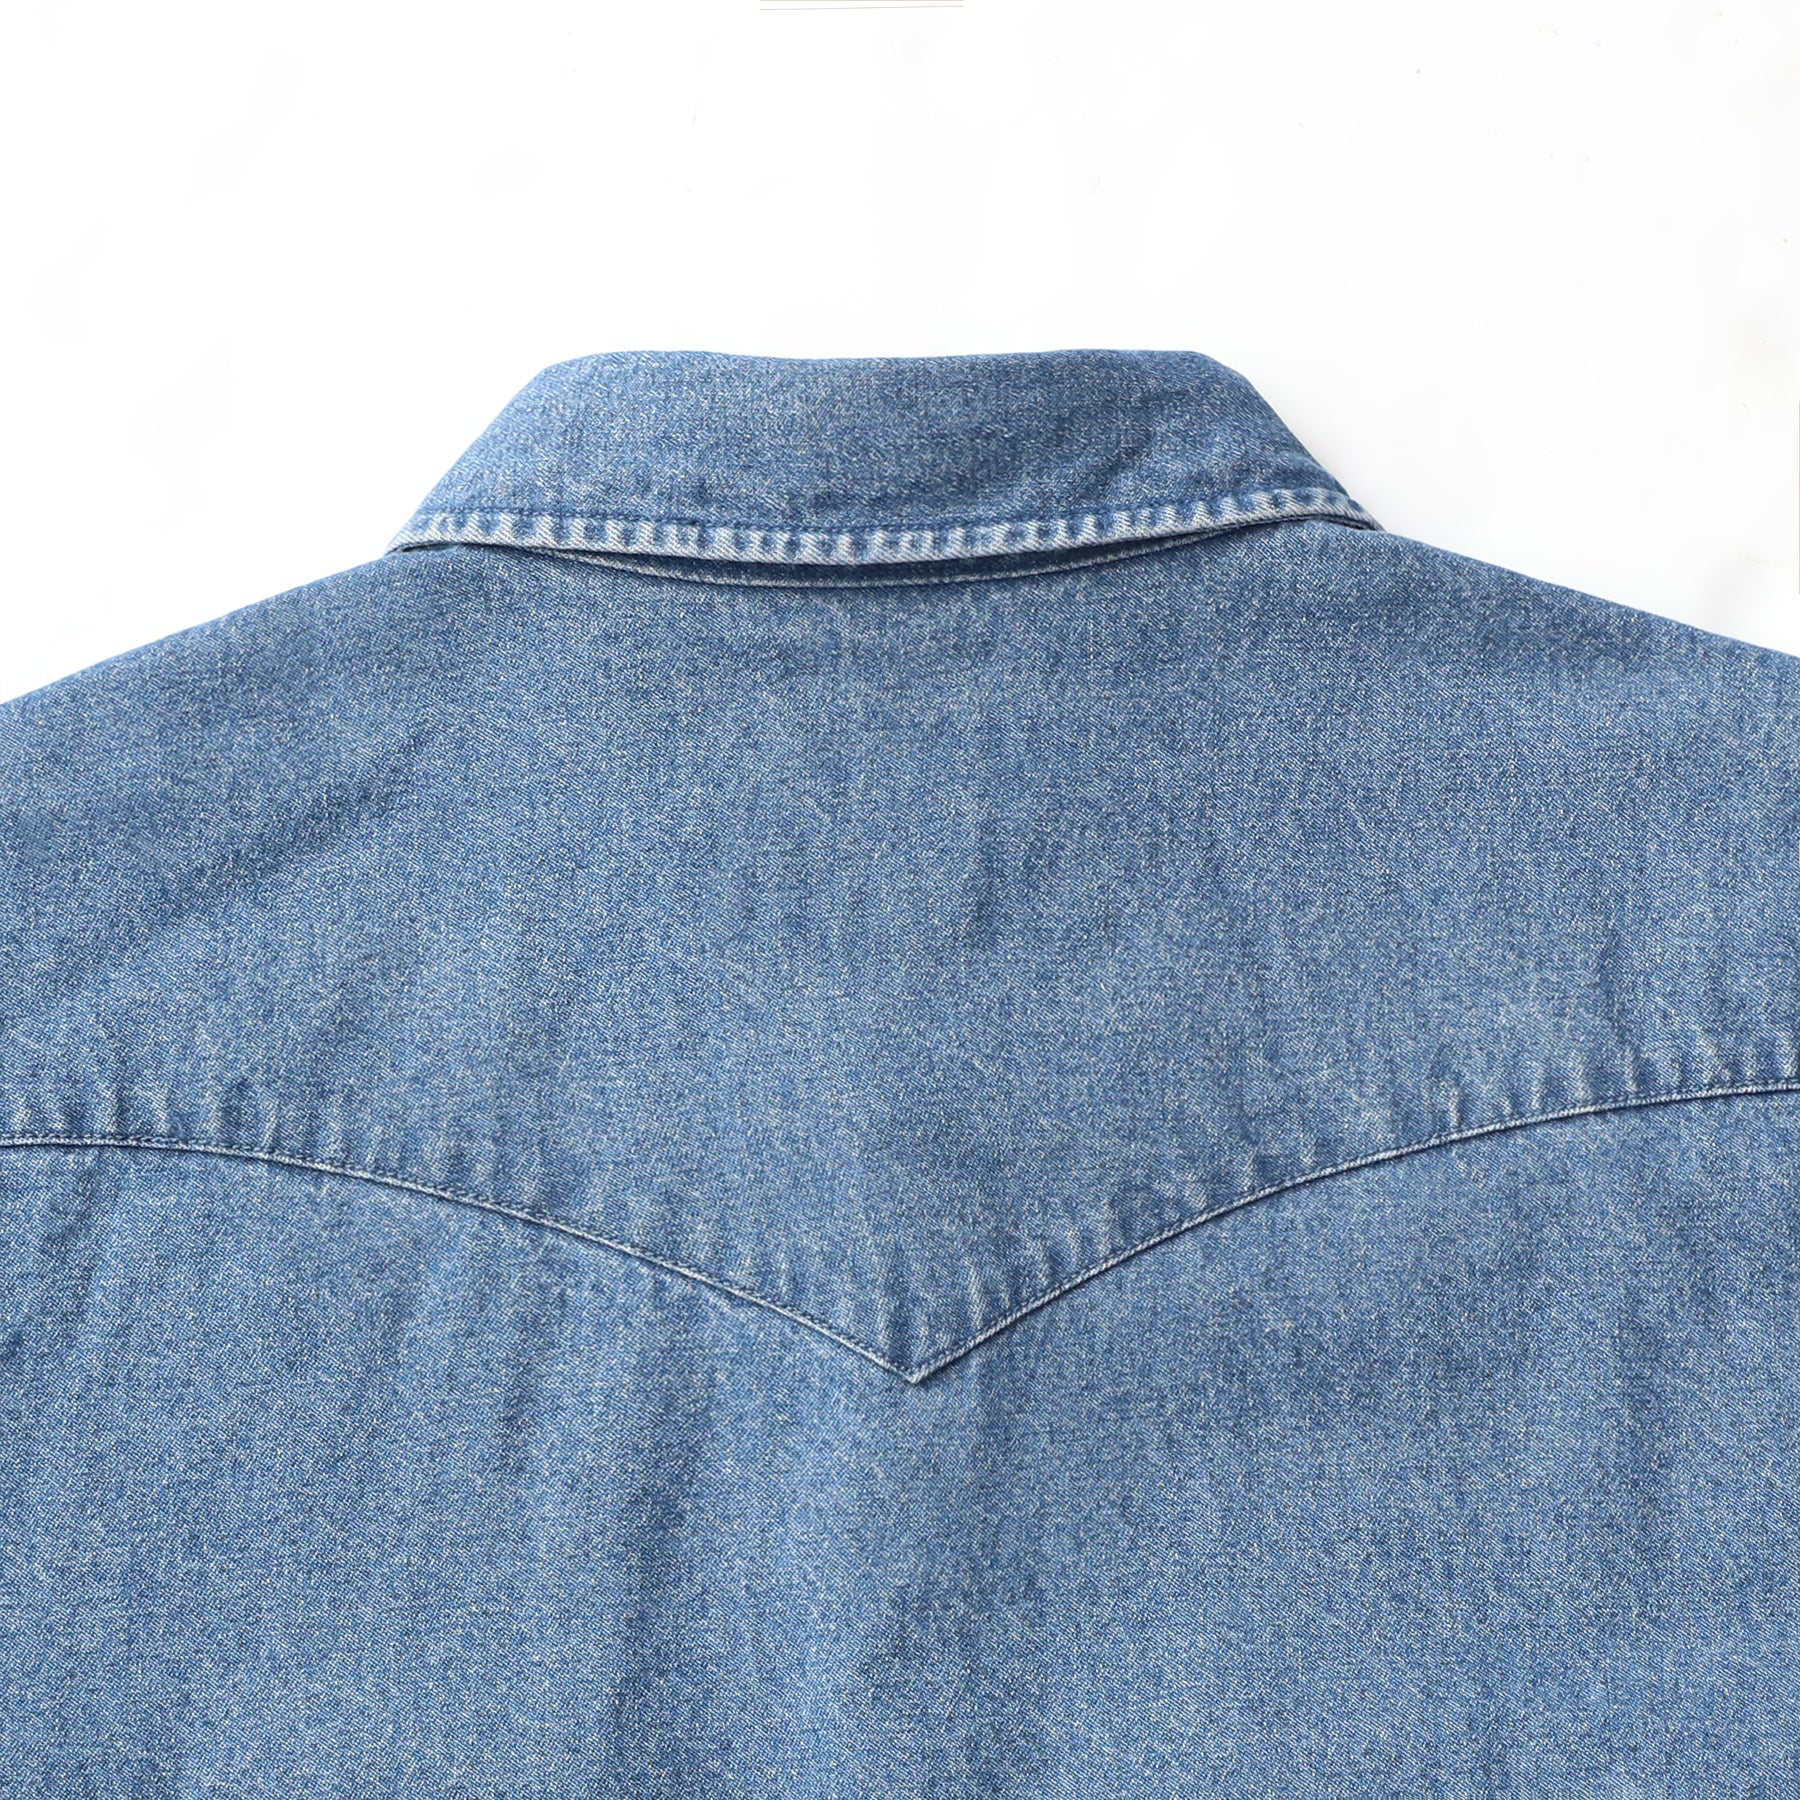 Men's cotton long sleeve denim shirt #4601